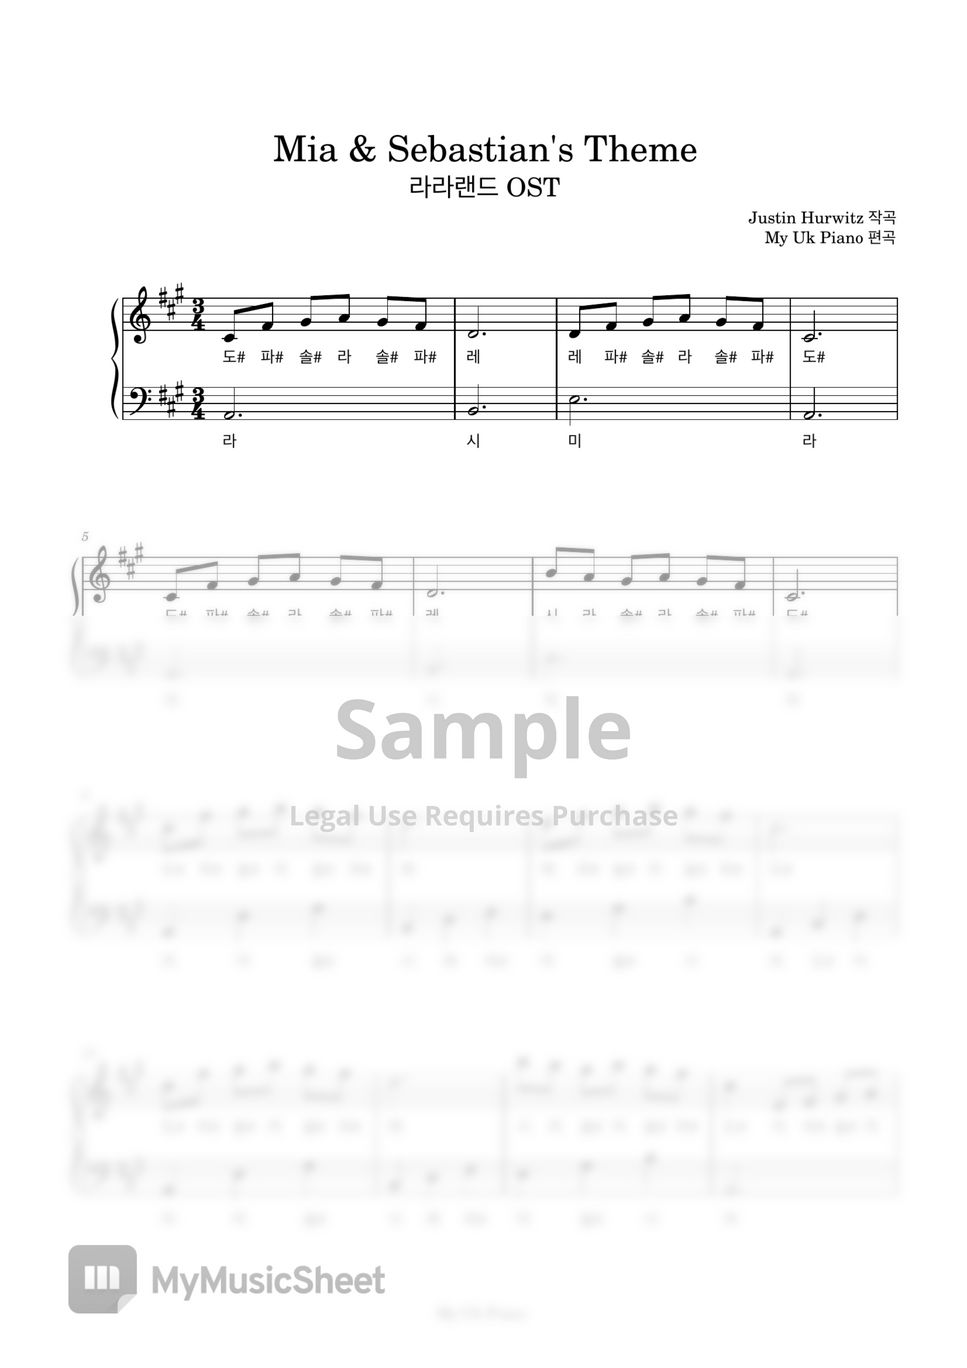 라라랜드 OST - 라라랜드( Lala Land OST) - Mia & Sebastian's Theme (쉬운계이름악보) by My Uk Piano